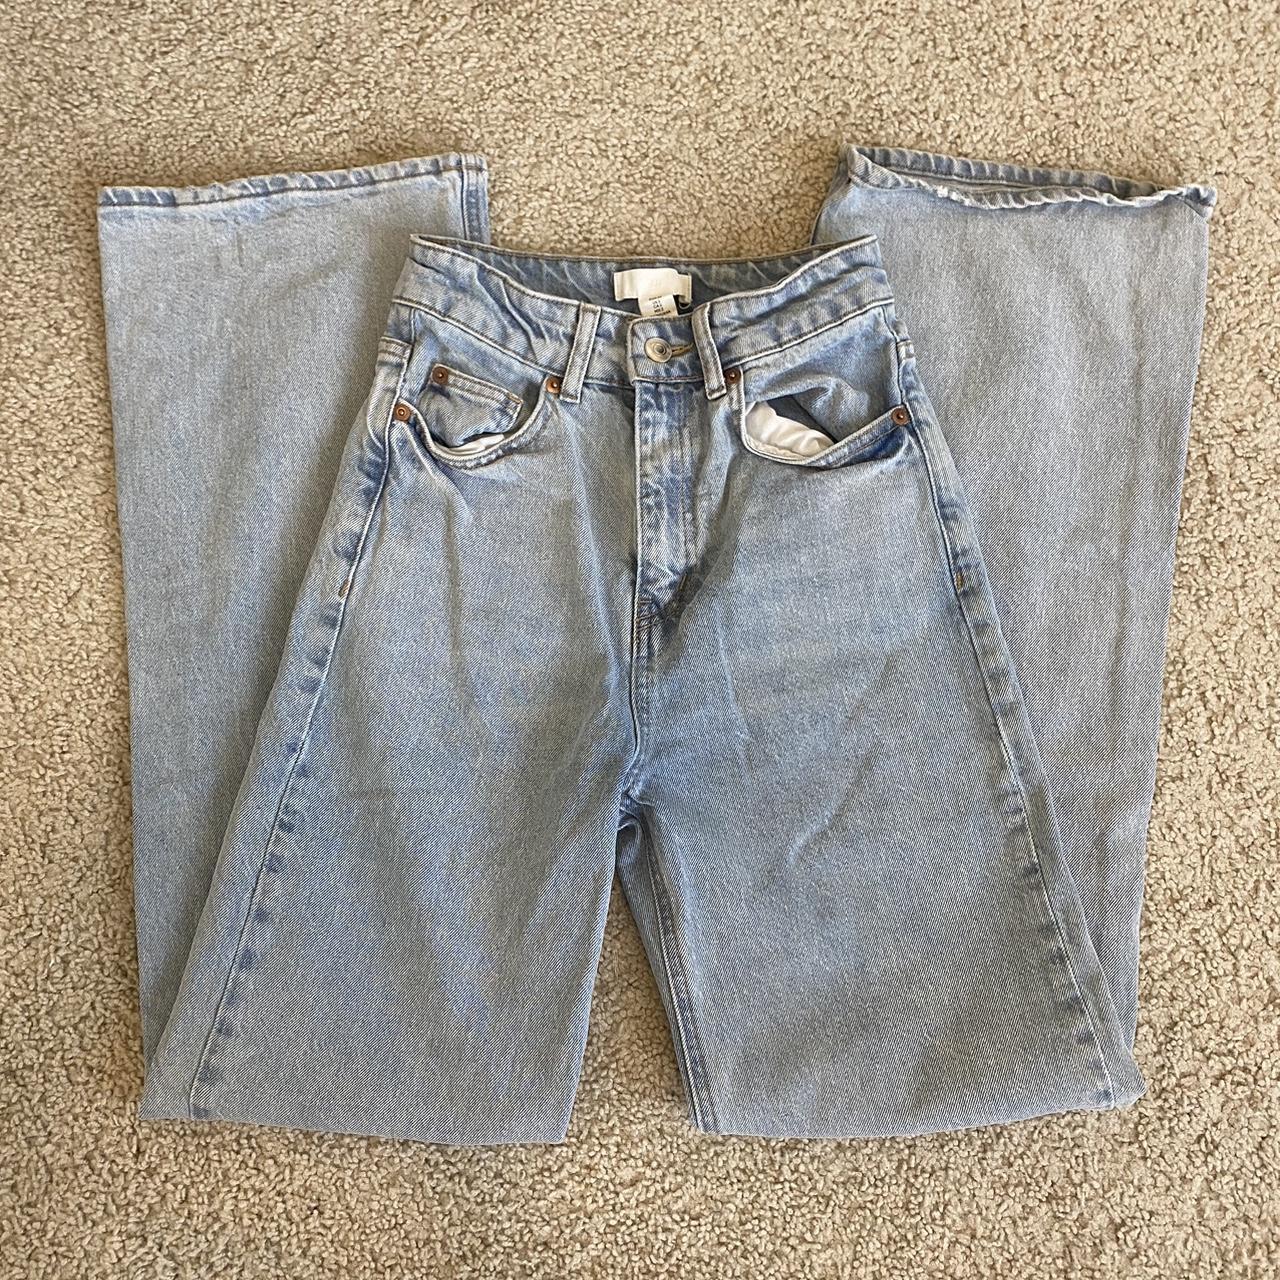 Wide Leg H&M Jeans Light Wash Barely worn Original... - Depop